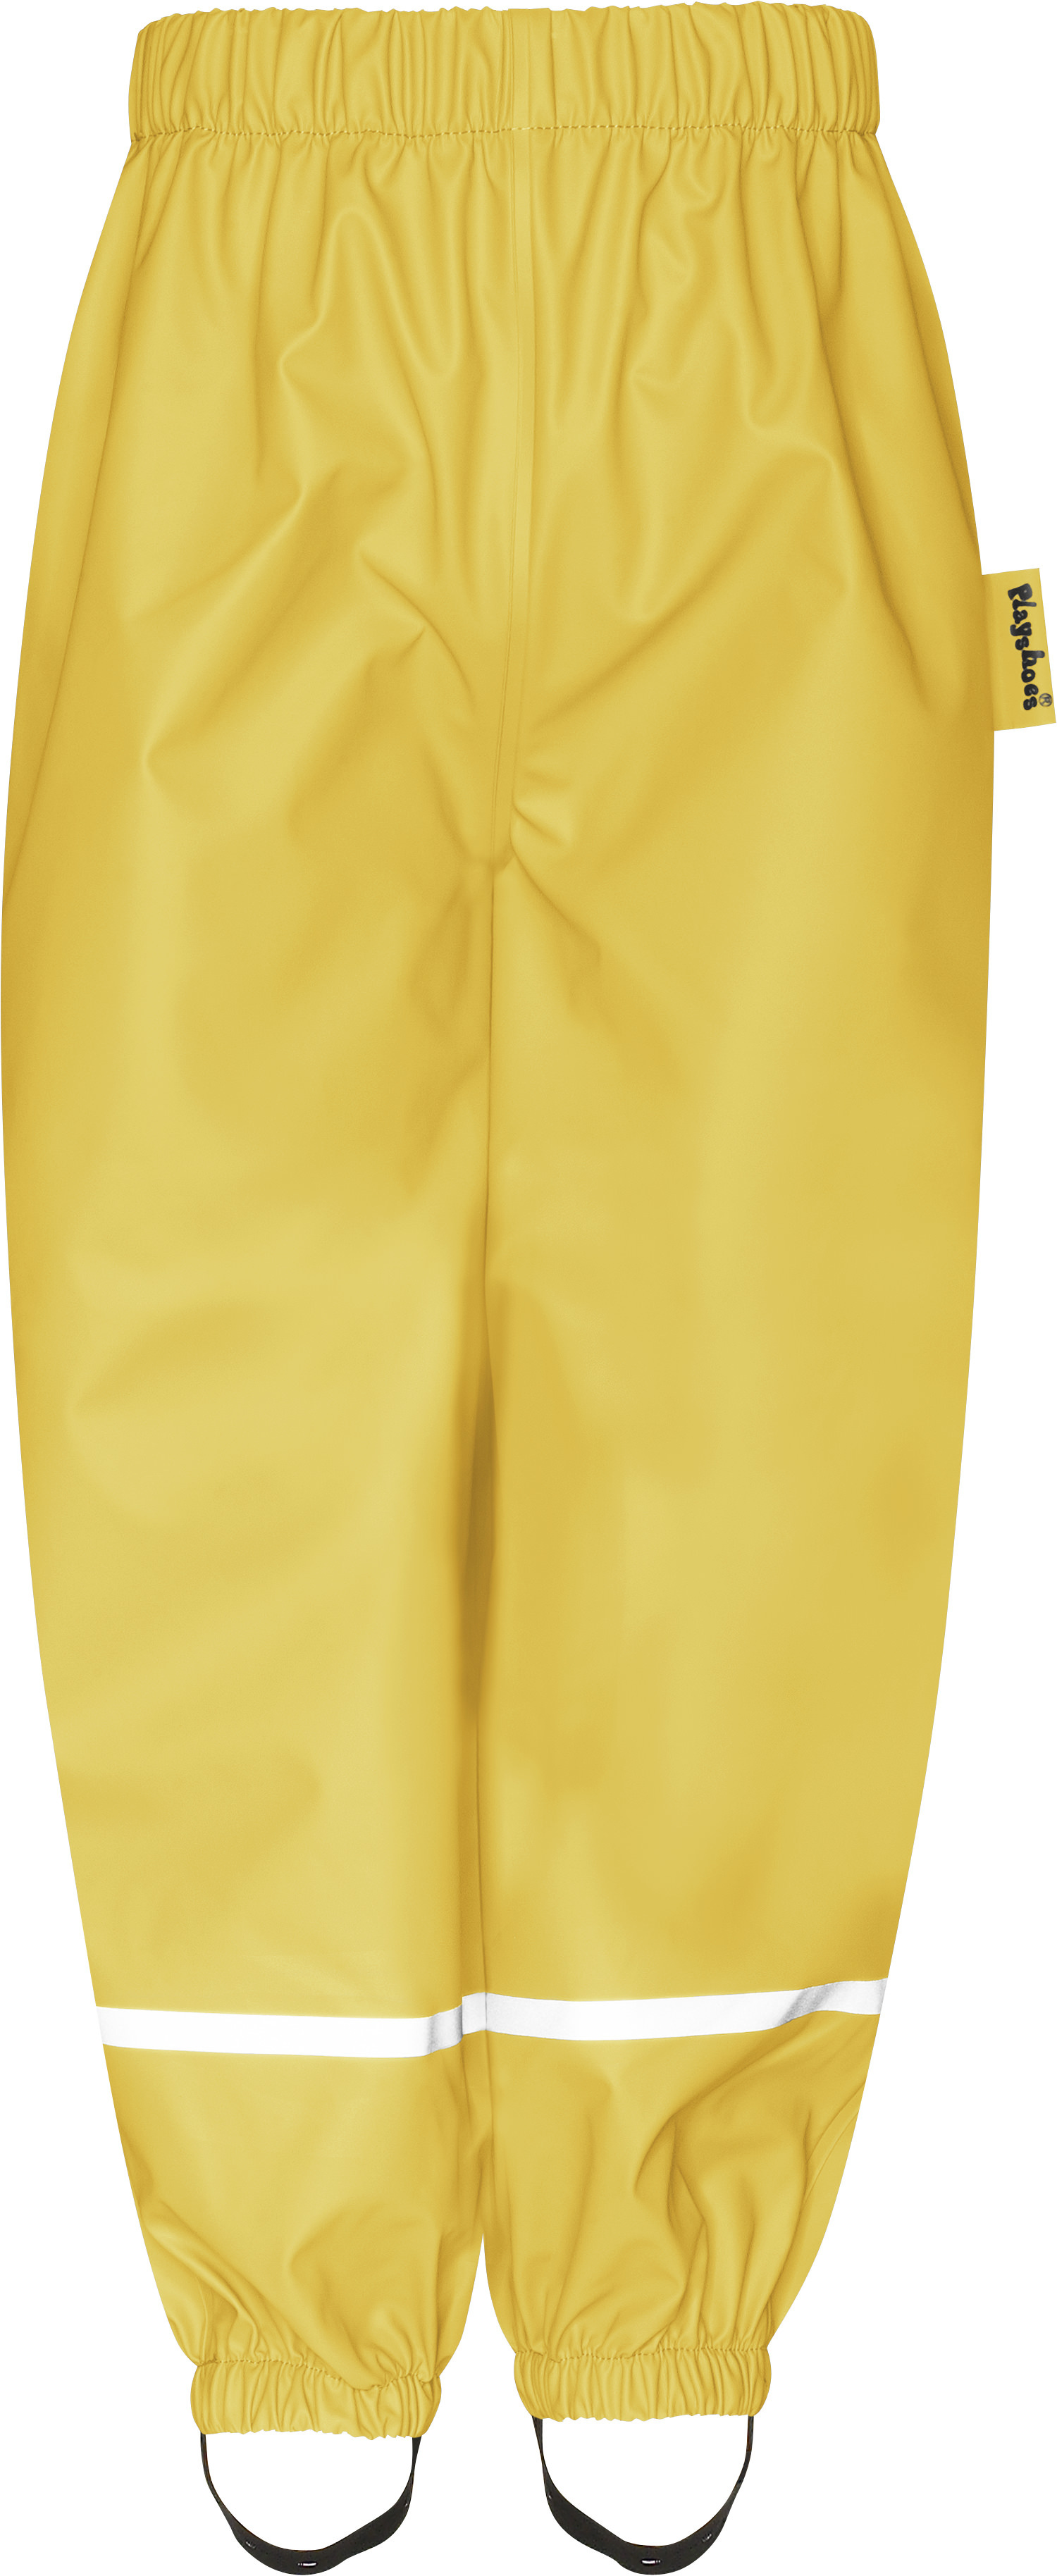 Брюки детские Playshoes 408626, желтый, 140